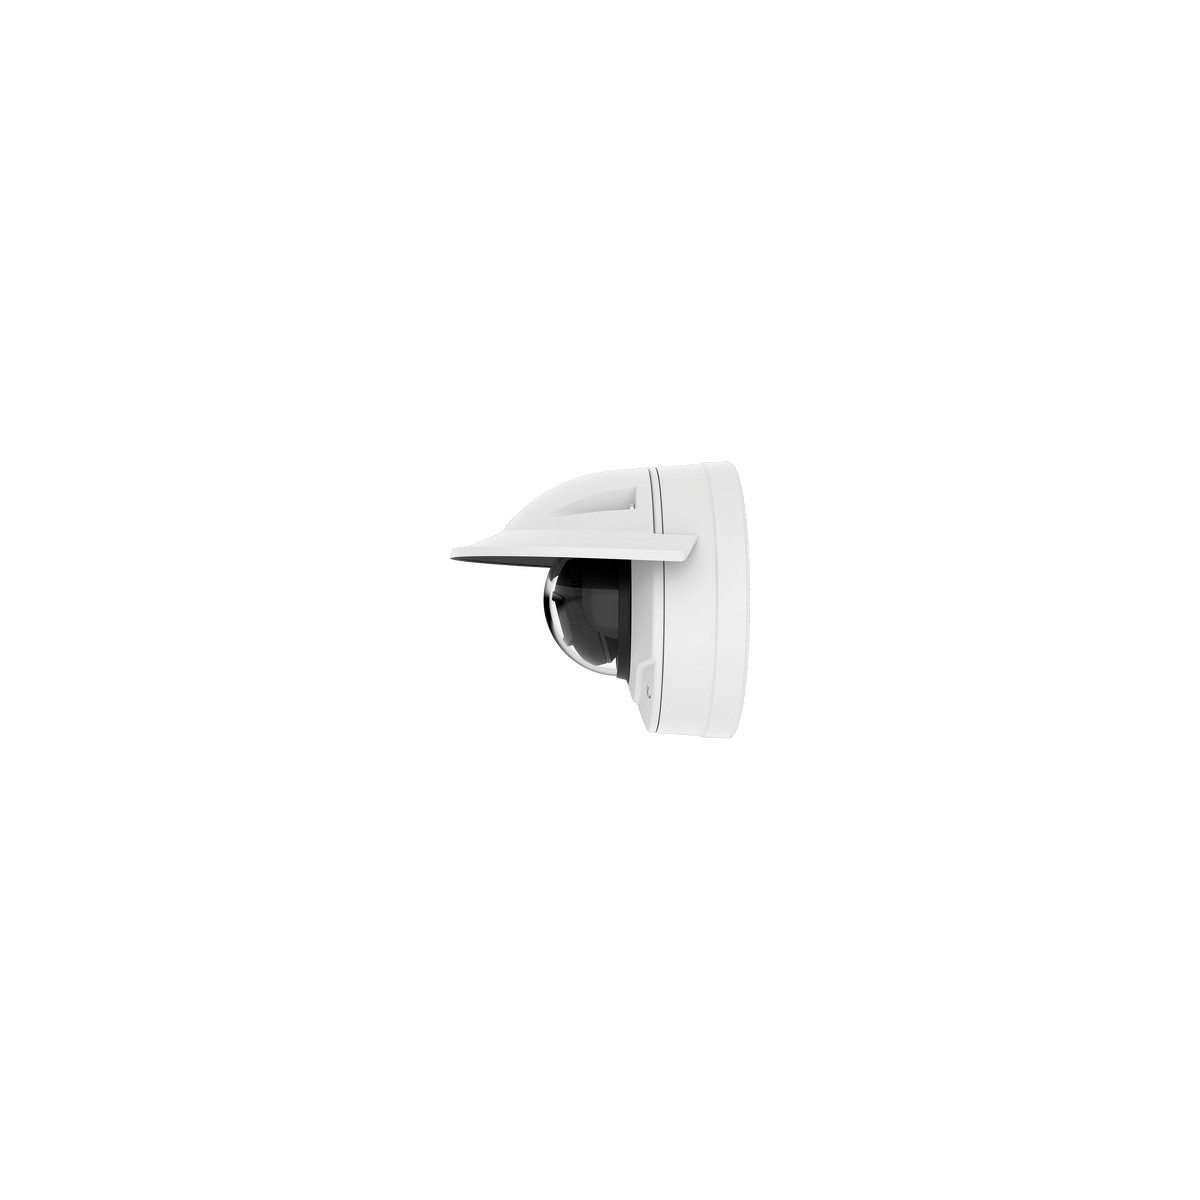 Axis Q3517-LVE - IP security camera - Indoor  outdoor - Wired - Digital PTZ,Preset point - EN 55032 Class A - EN 55024 - IEC/EN 